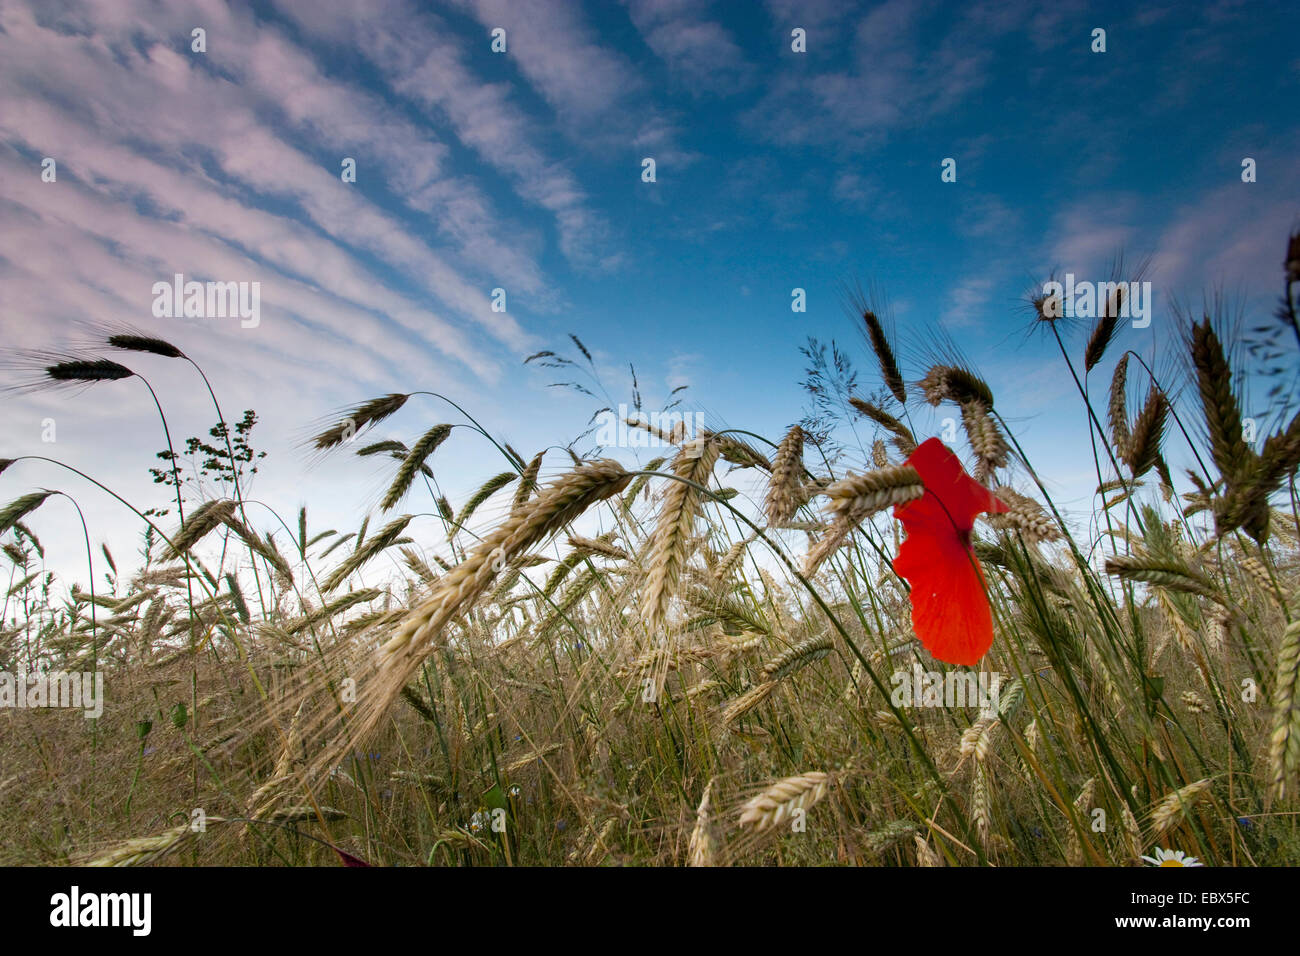 common poppy, corn poppy, red poppy (Papaver rhoeas), barley field with poppy, Germany, Brandenburg, Vogtlaendische Schweiz Stock Photo